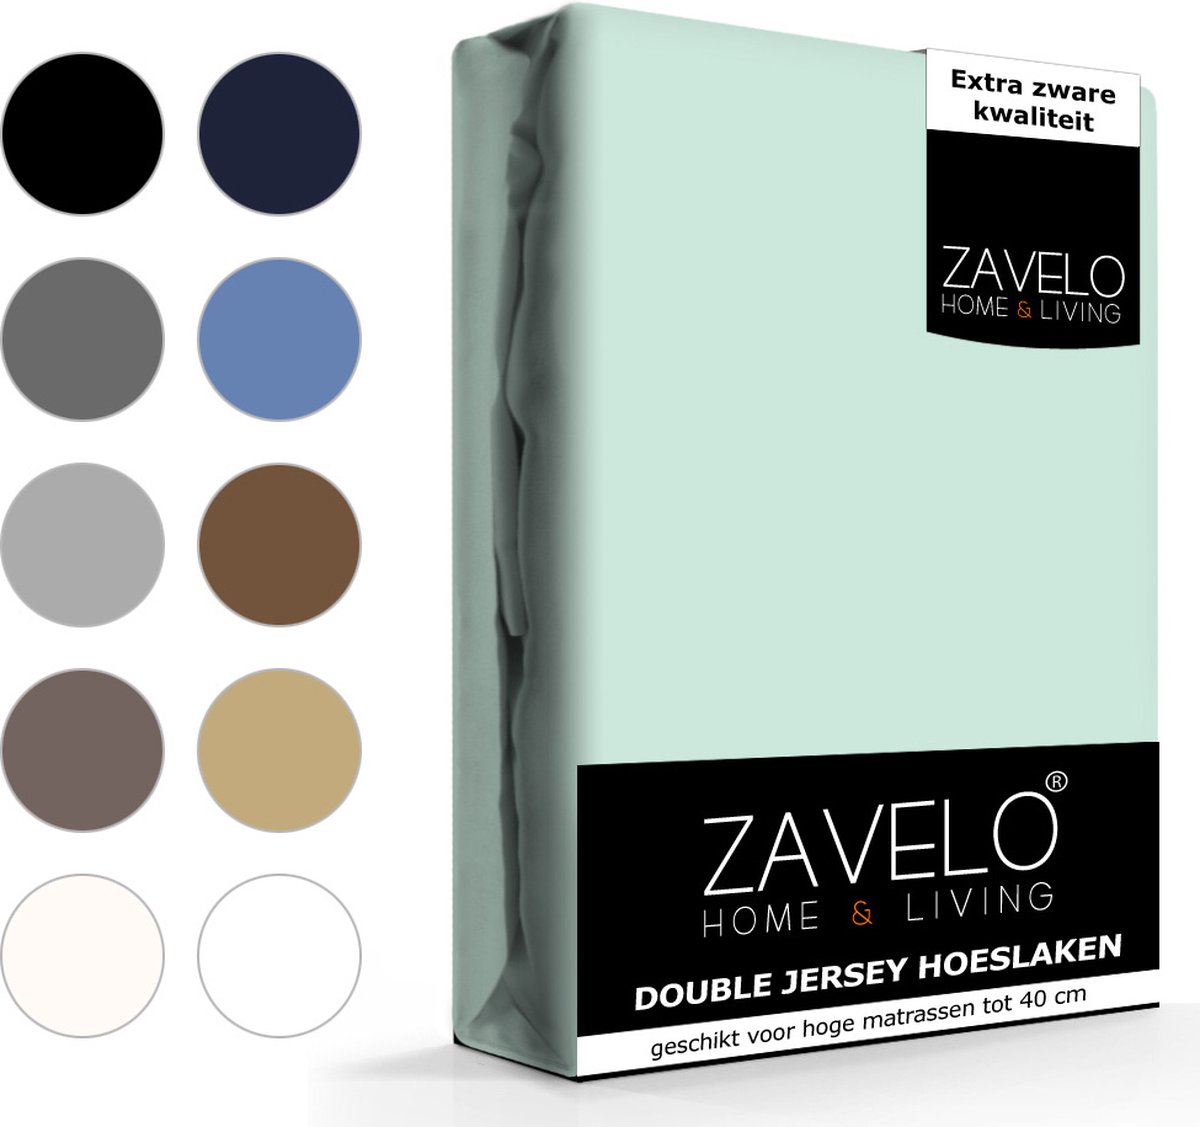 Slaaptextiel Zavelo Double Jersey Hoeslaken Pastel-lits-jumeaux (200x220 Cm) - Blauw